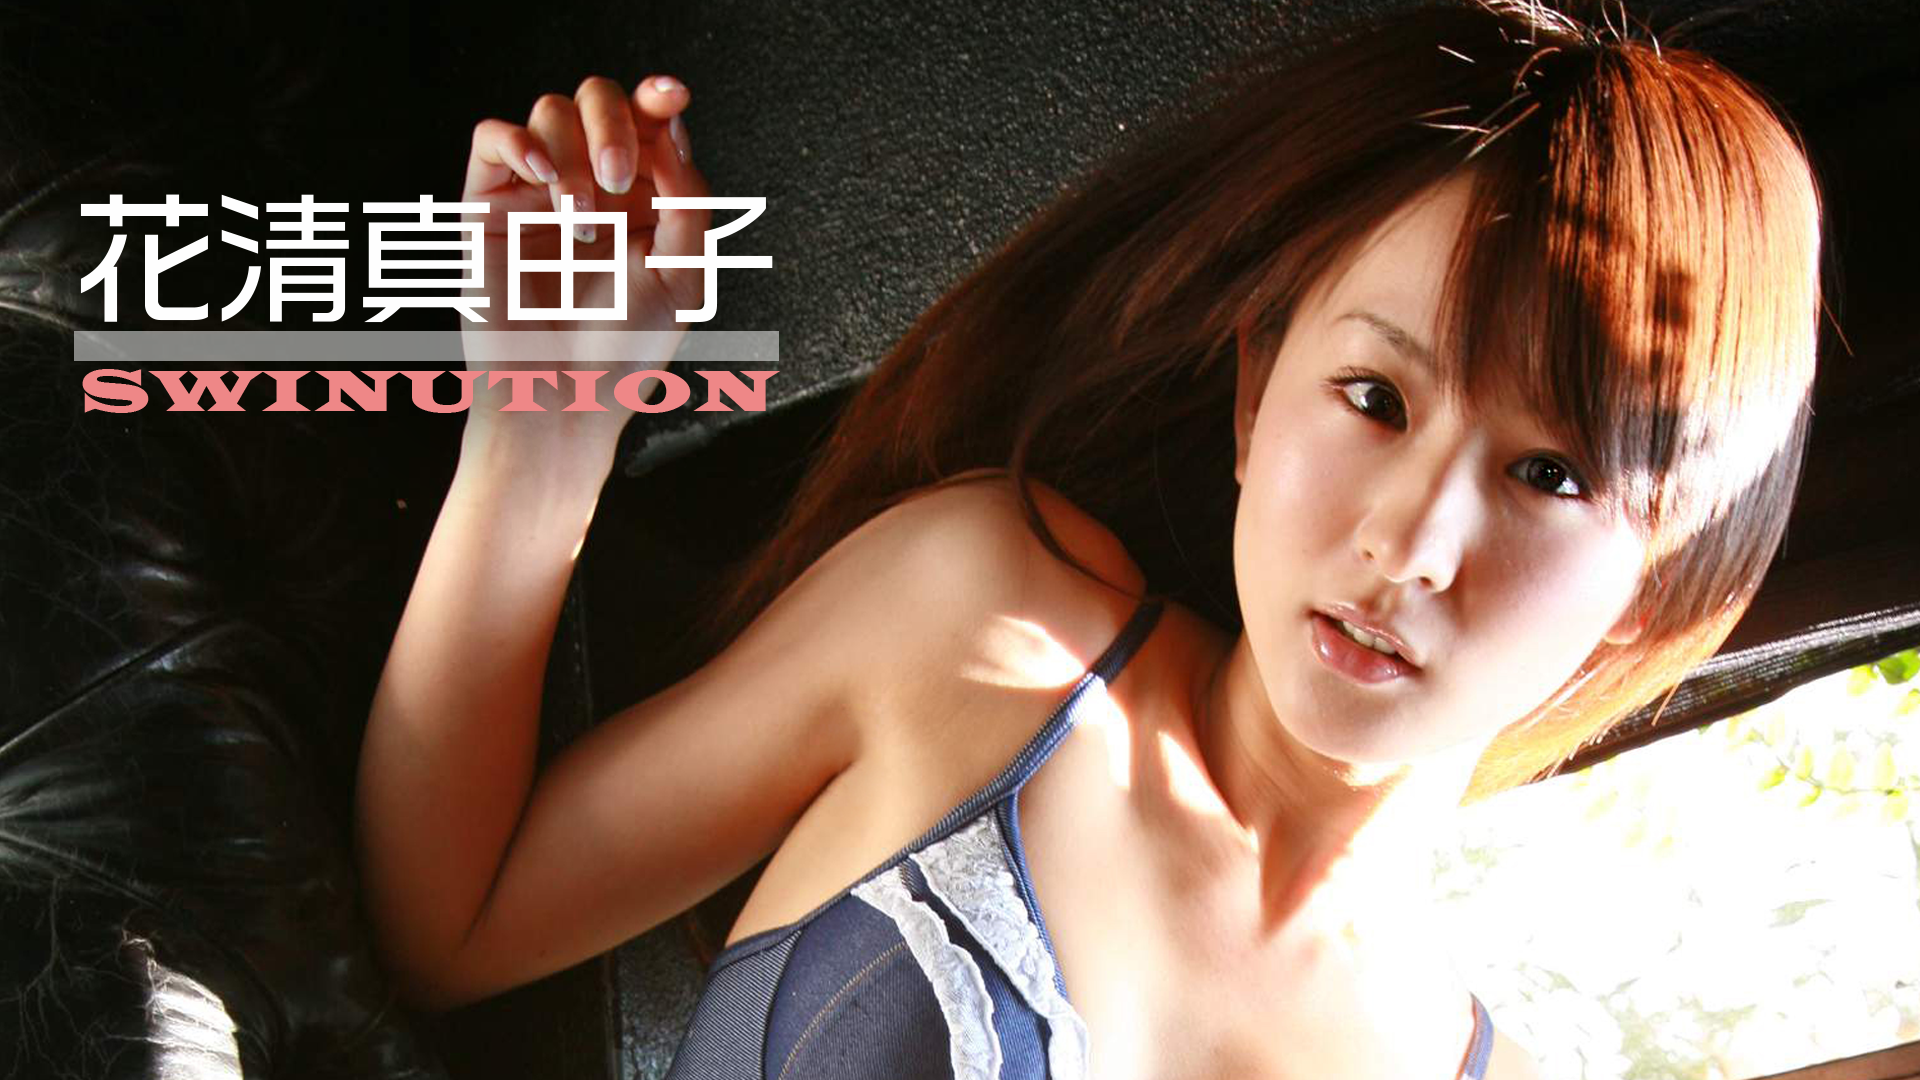 花清真由子『SWINUTION』(その他♡ / 2008) - 動画配信 | U-NEXT 31日間無料トライアル